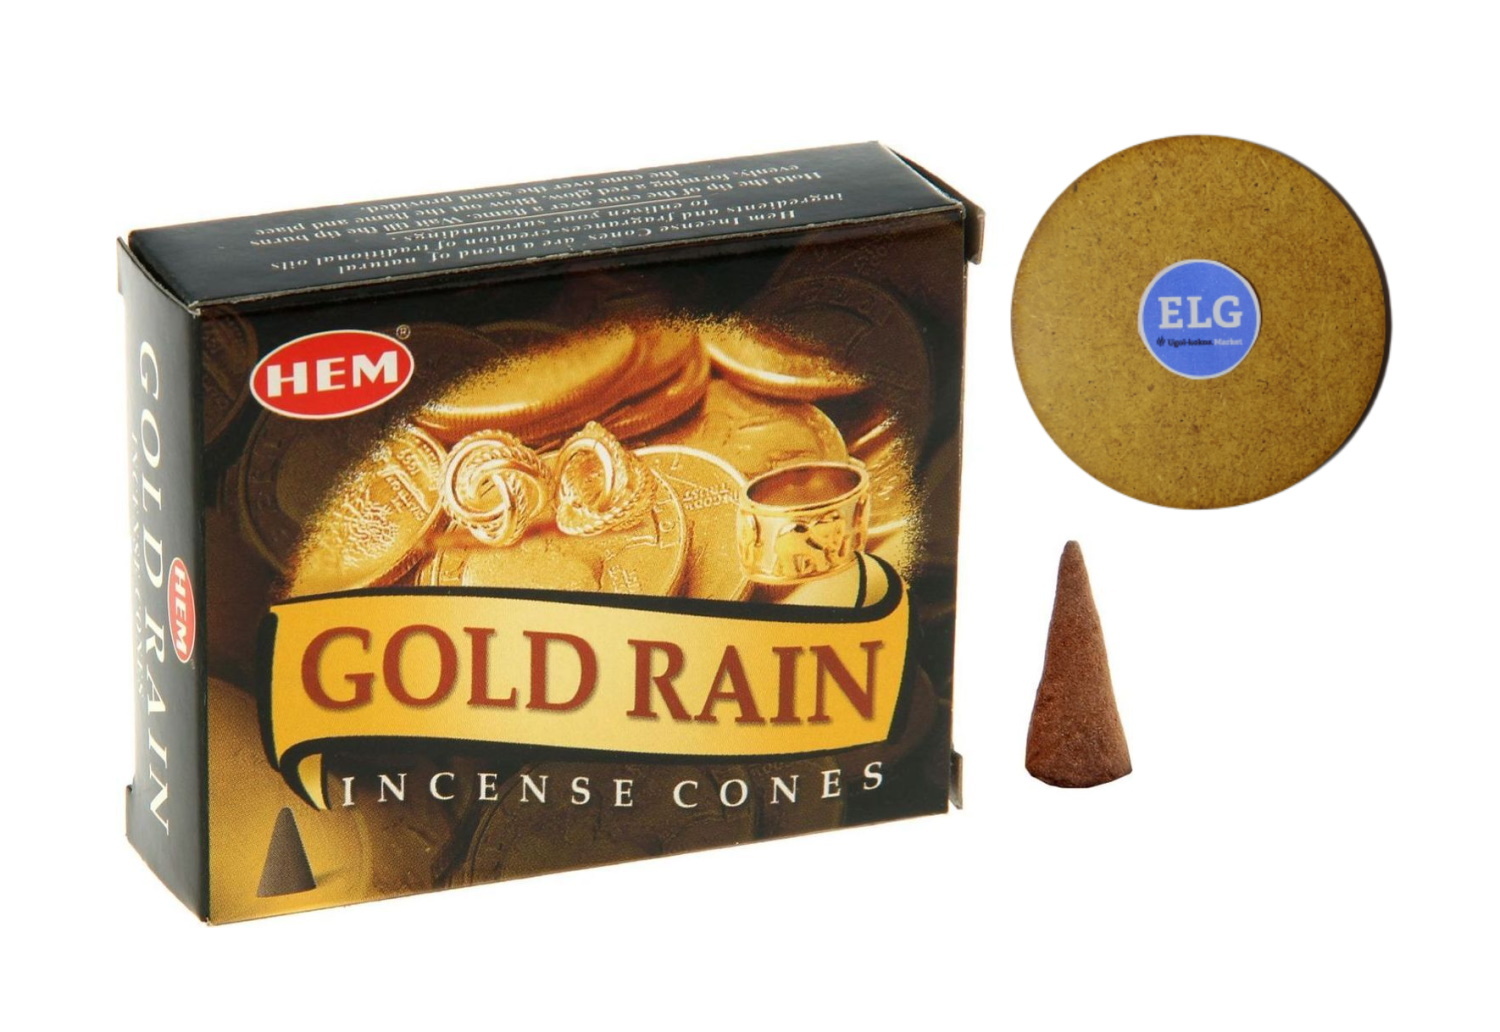 фото Благовония hem конусы золотой дождь (gold rain) упаковка 10 конусов + подставка elg